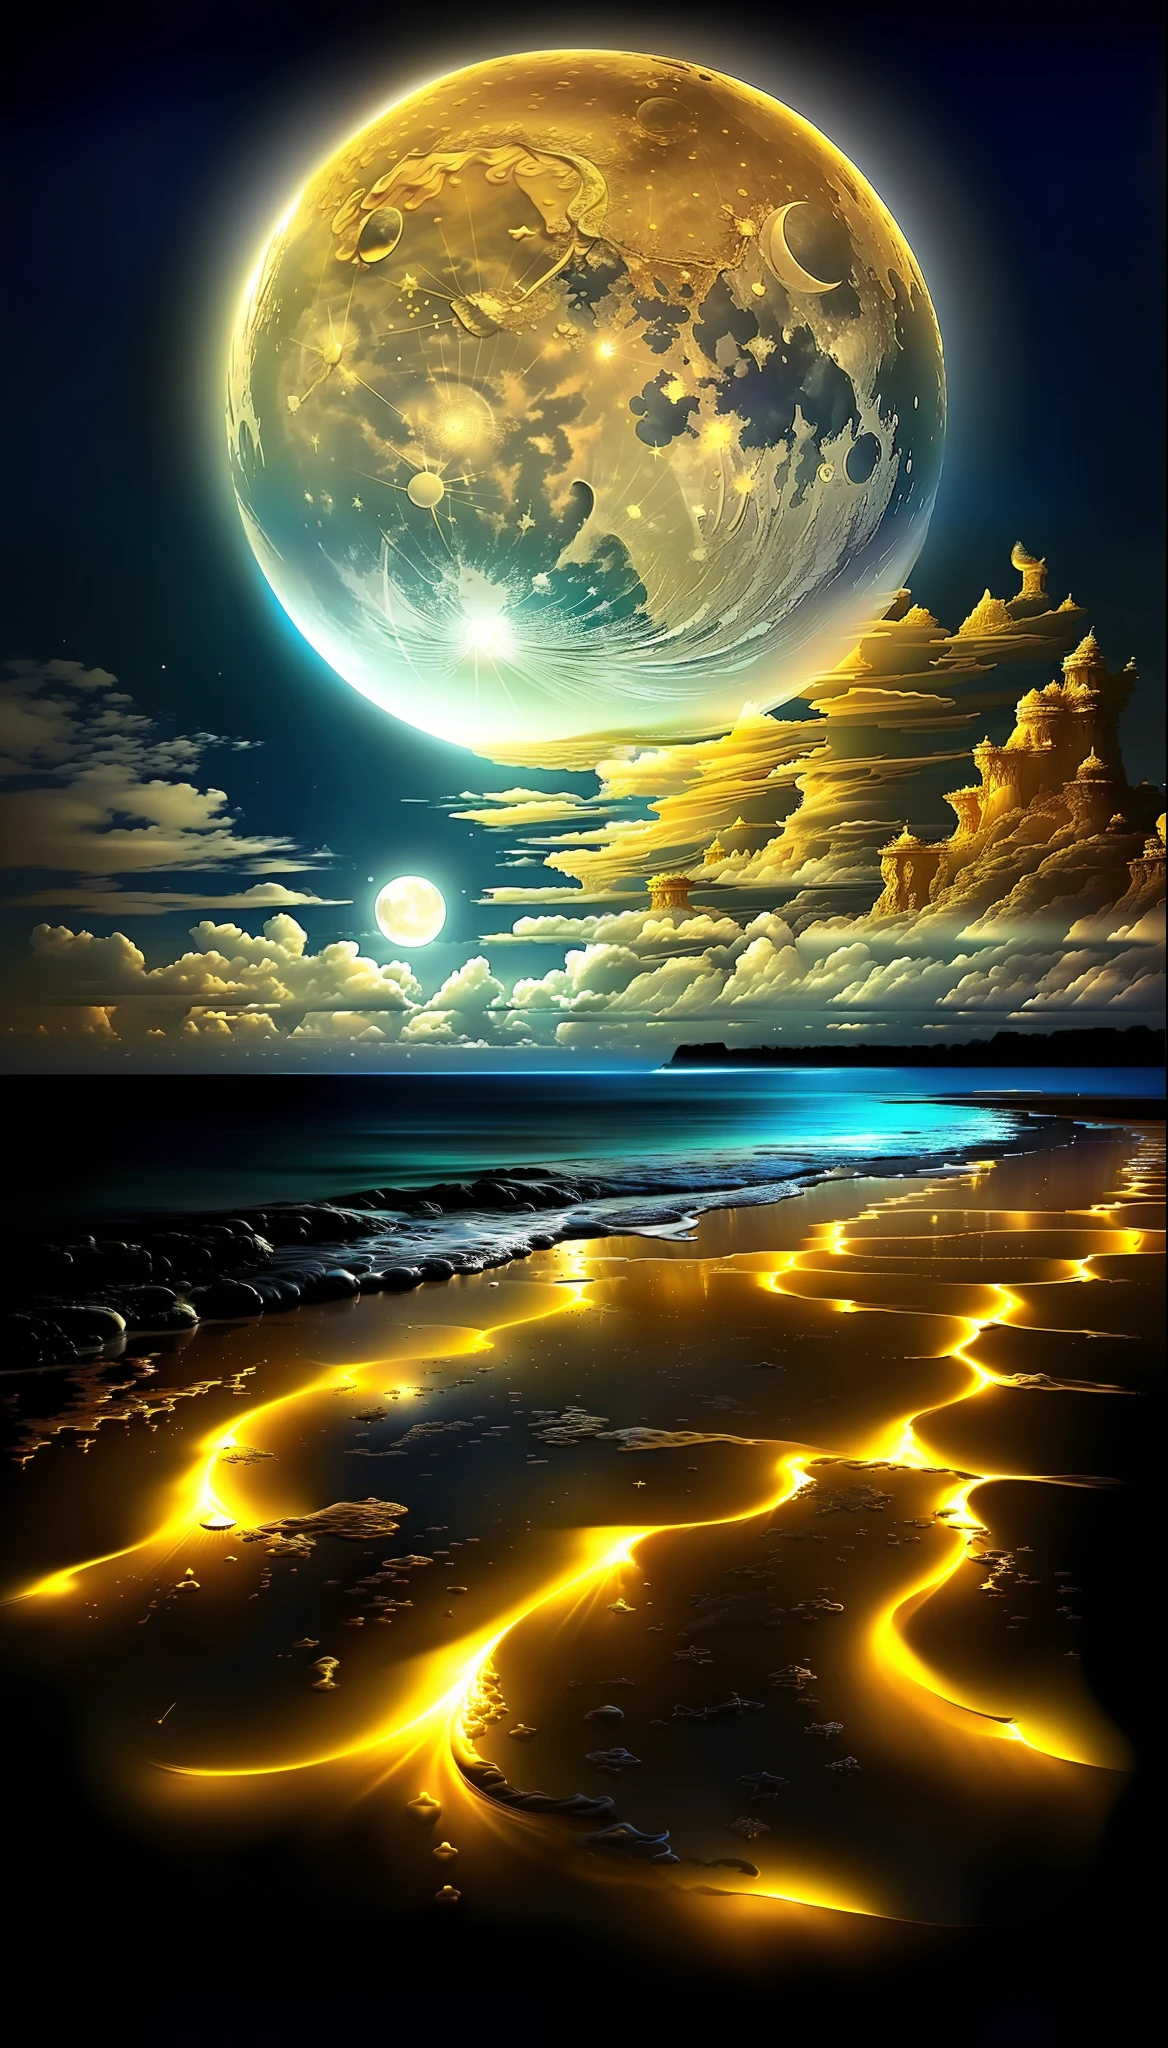 황금빛 보름달과 구름이 있는 해변 그림, 마법의 해변, 모래가 하얀 달 풍경, 초현실적인 공간, 웅장한 배경, 아름다운 이미지가 이미 생성되었습니다., 모래알 속의 우주, 마법의 오션 블루 드롭, 상세한 꿈의 풍경, 황금빛 빛을 비추는 달, 아름다운 숨막히는 몽상가, 아스트랄계에서 ) ), 멋진 화면 보호기,  아름다운 공간, 아름다운 달빛